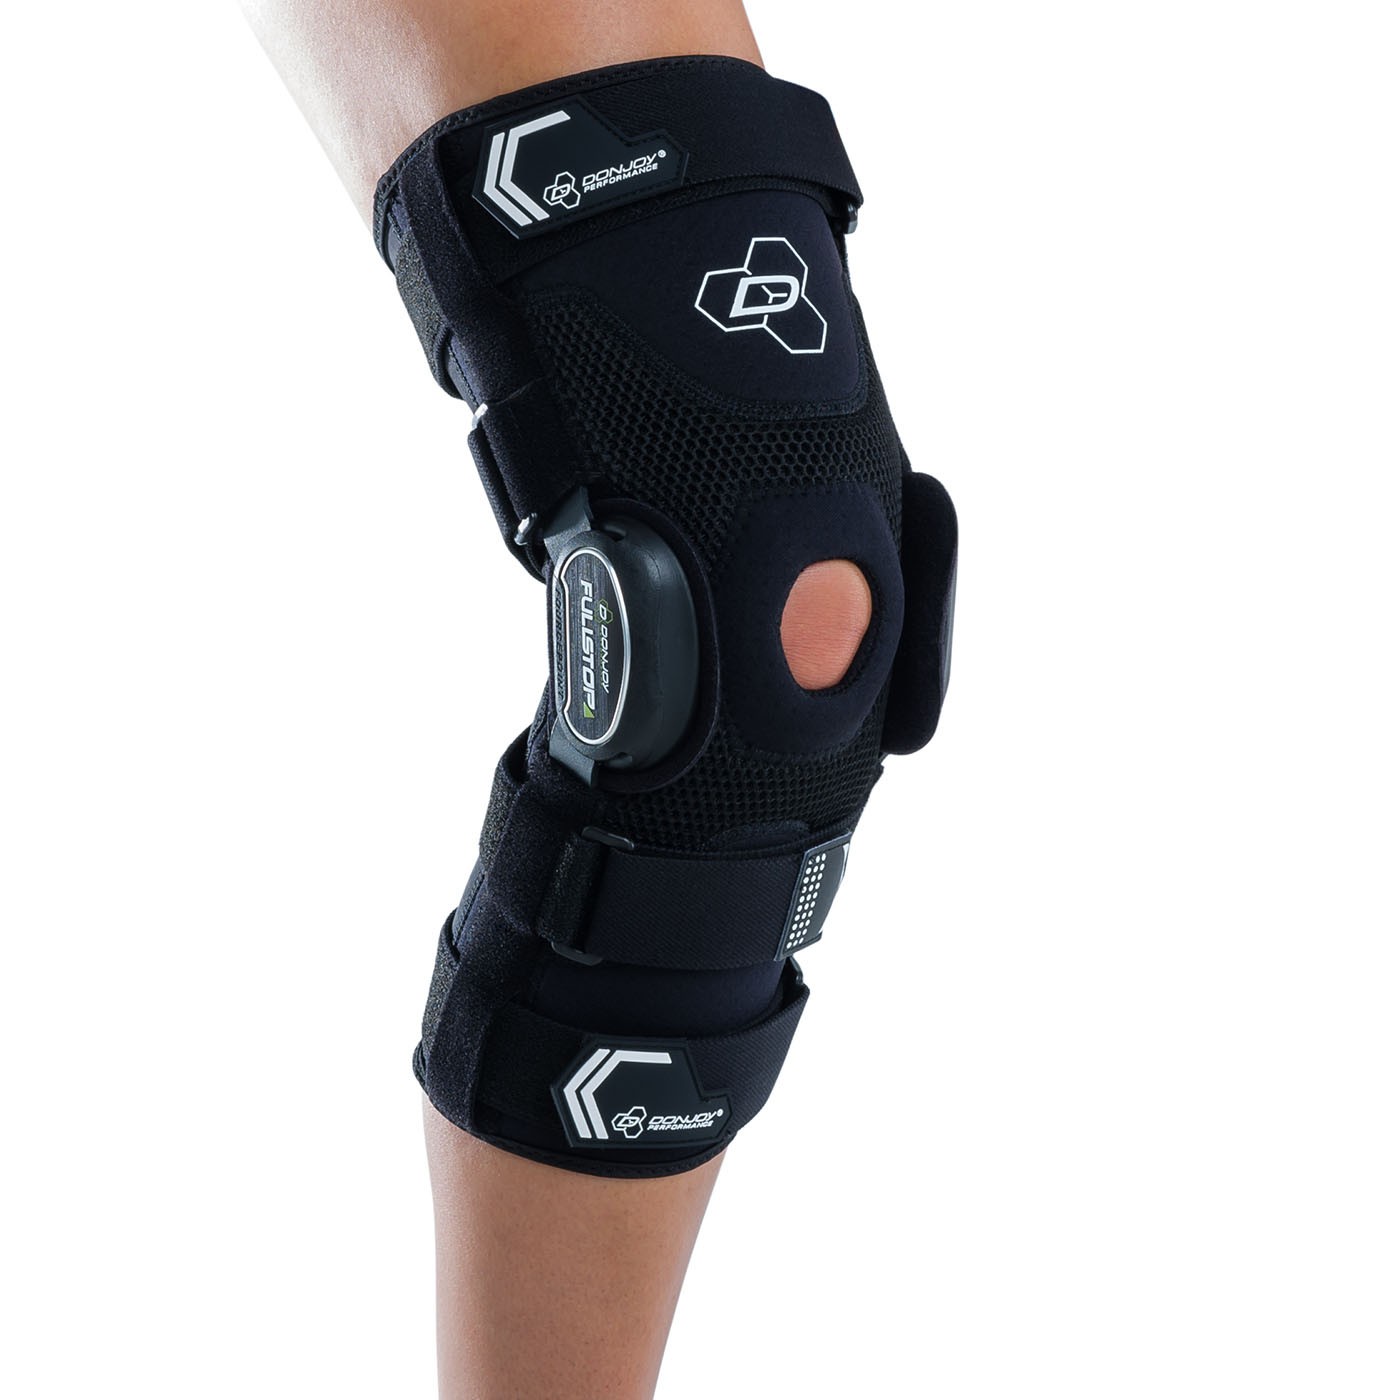 Bionic FullStop Knee Brace - On Skin